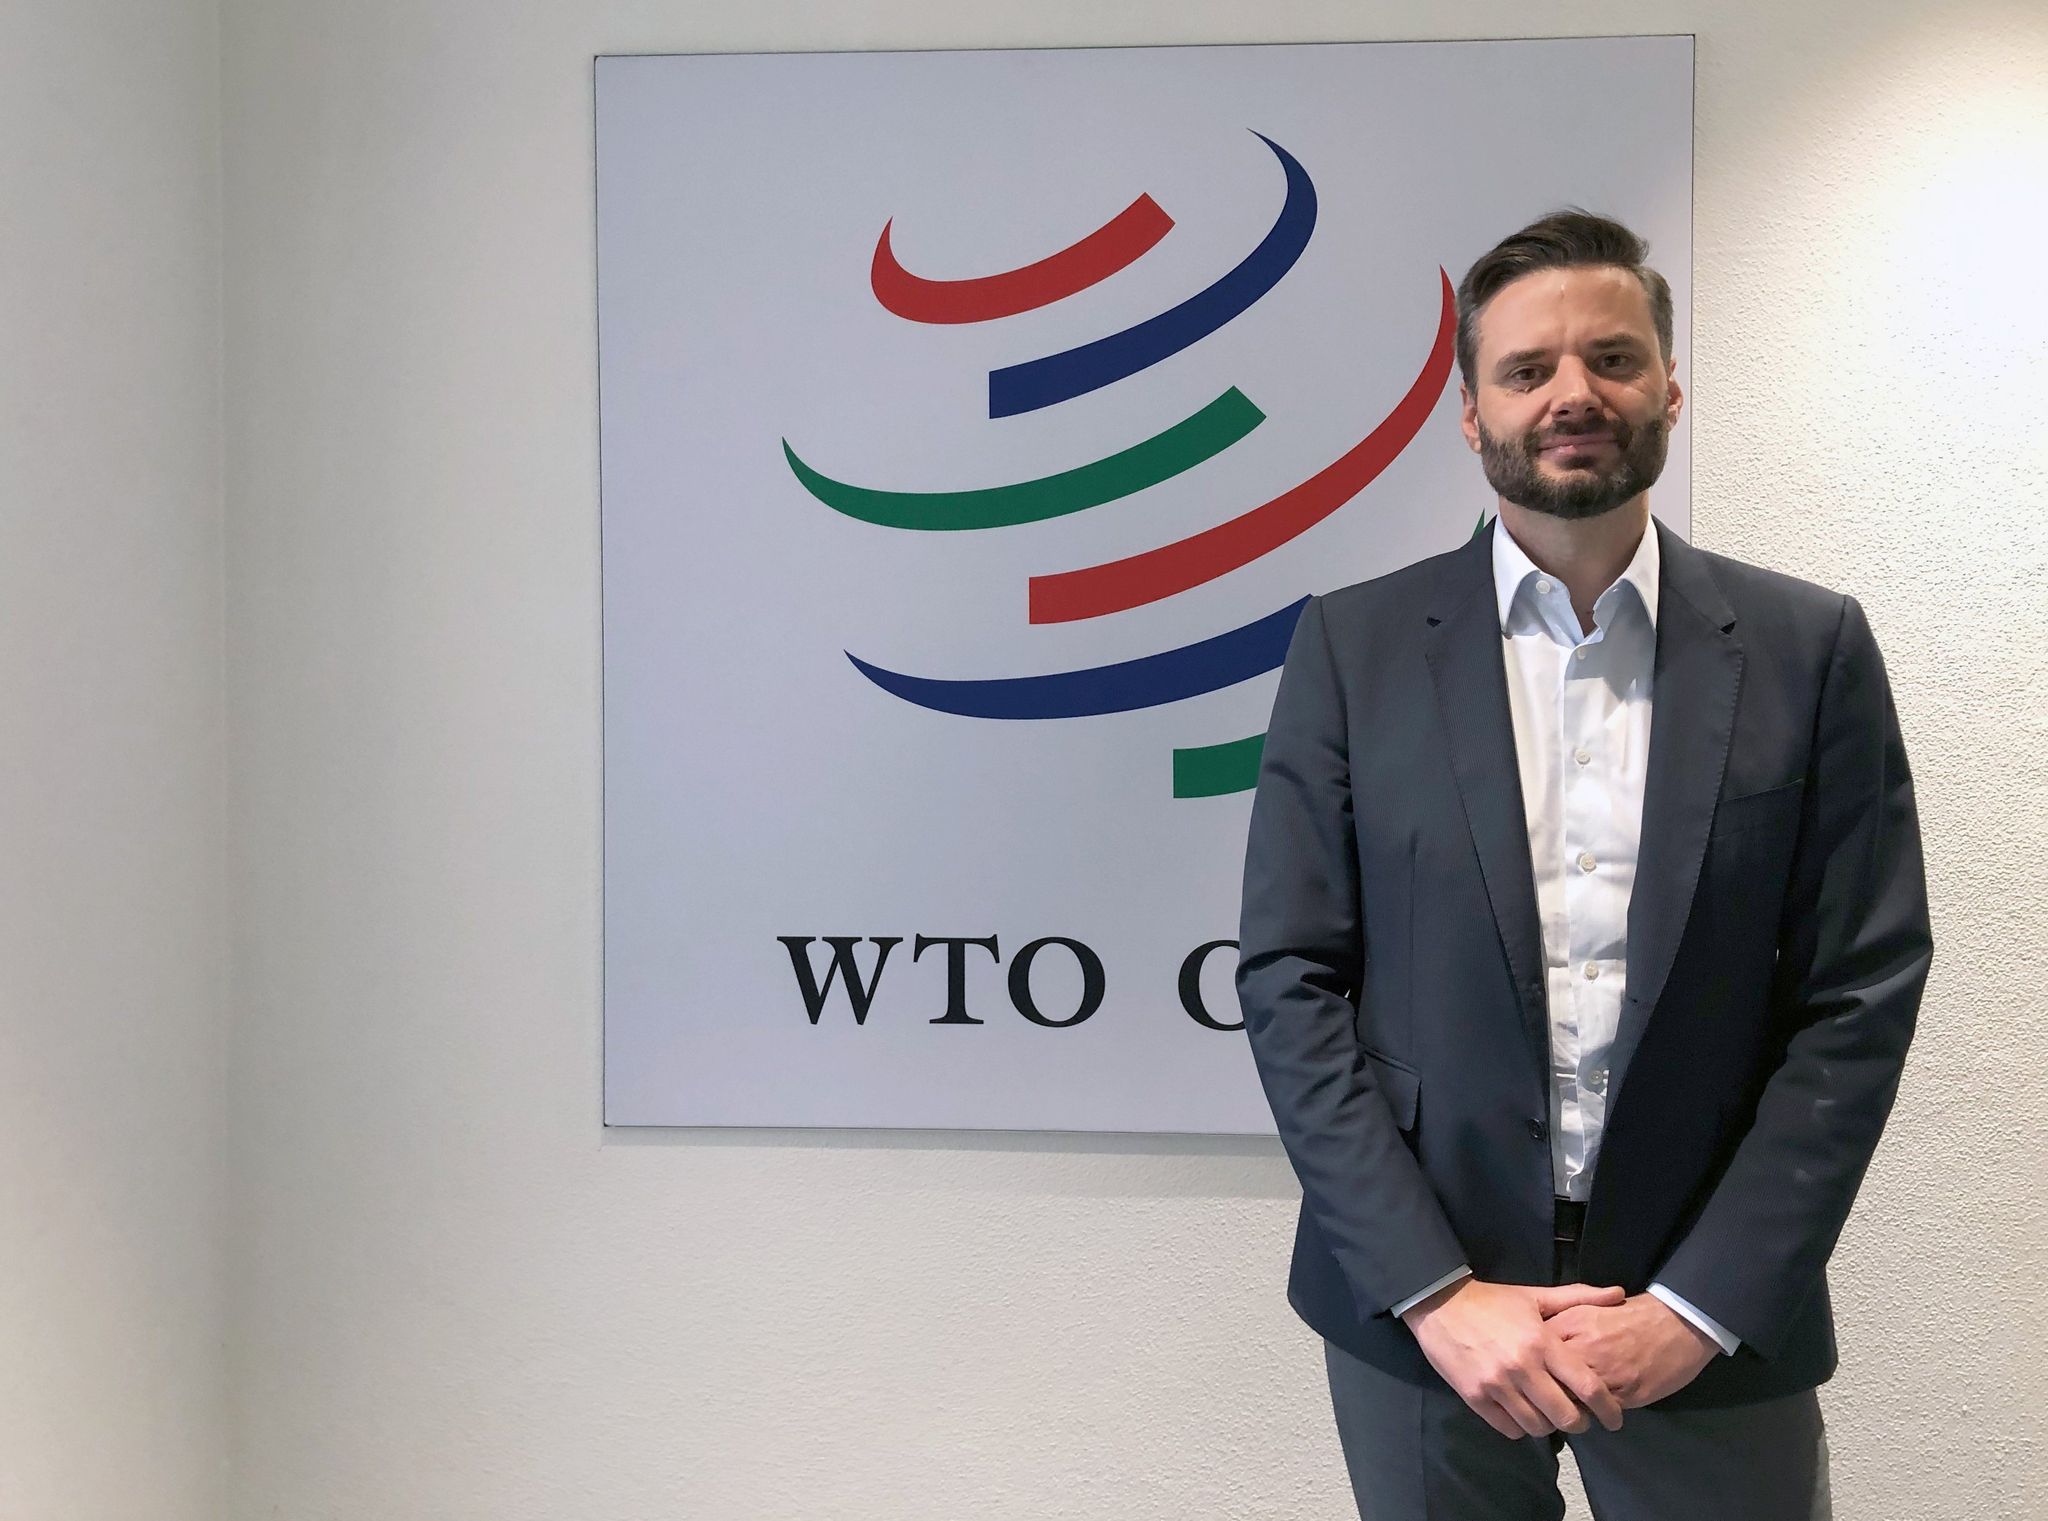 «Wir sehen erste Anzeichen dafür, dass es eine Reorientierung des Handels anhand geopolitischer Einflusssphären gibt», sagt Ralph Ossa, Chefökonom der Welthandelsorganisation (WTO).